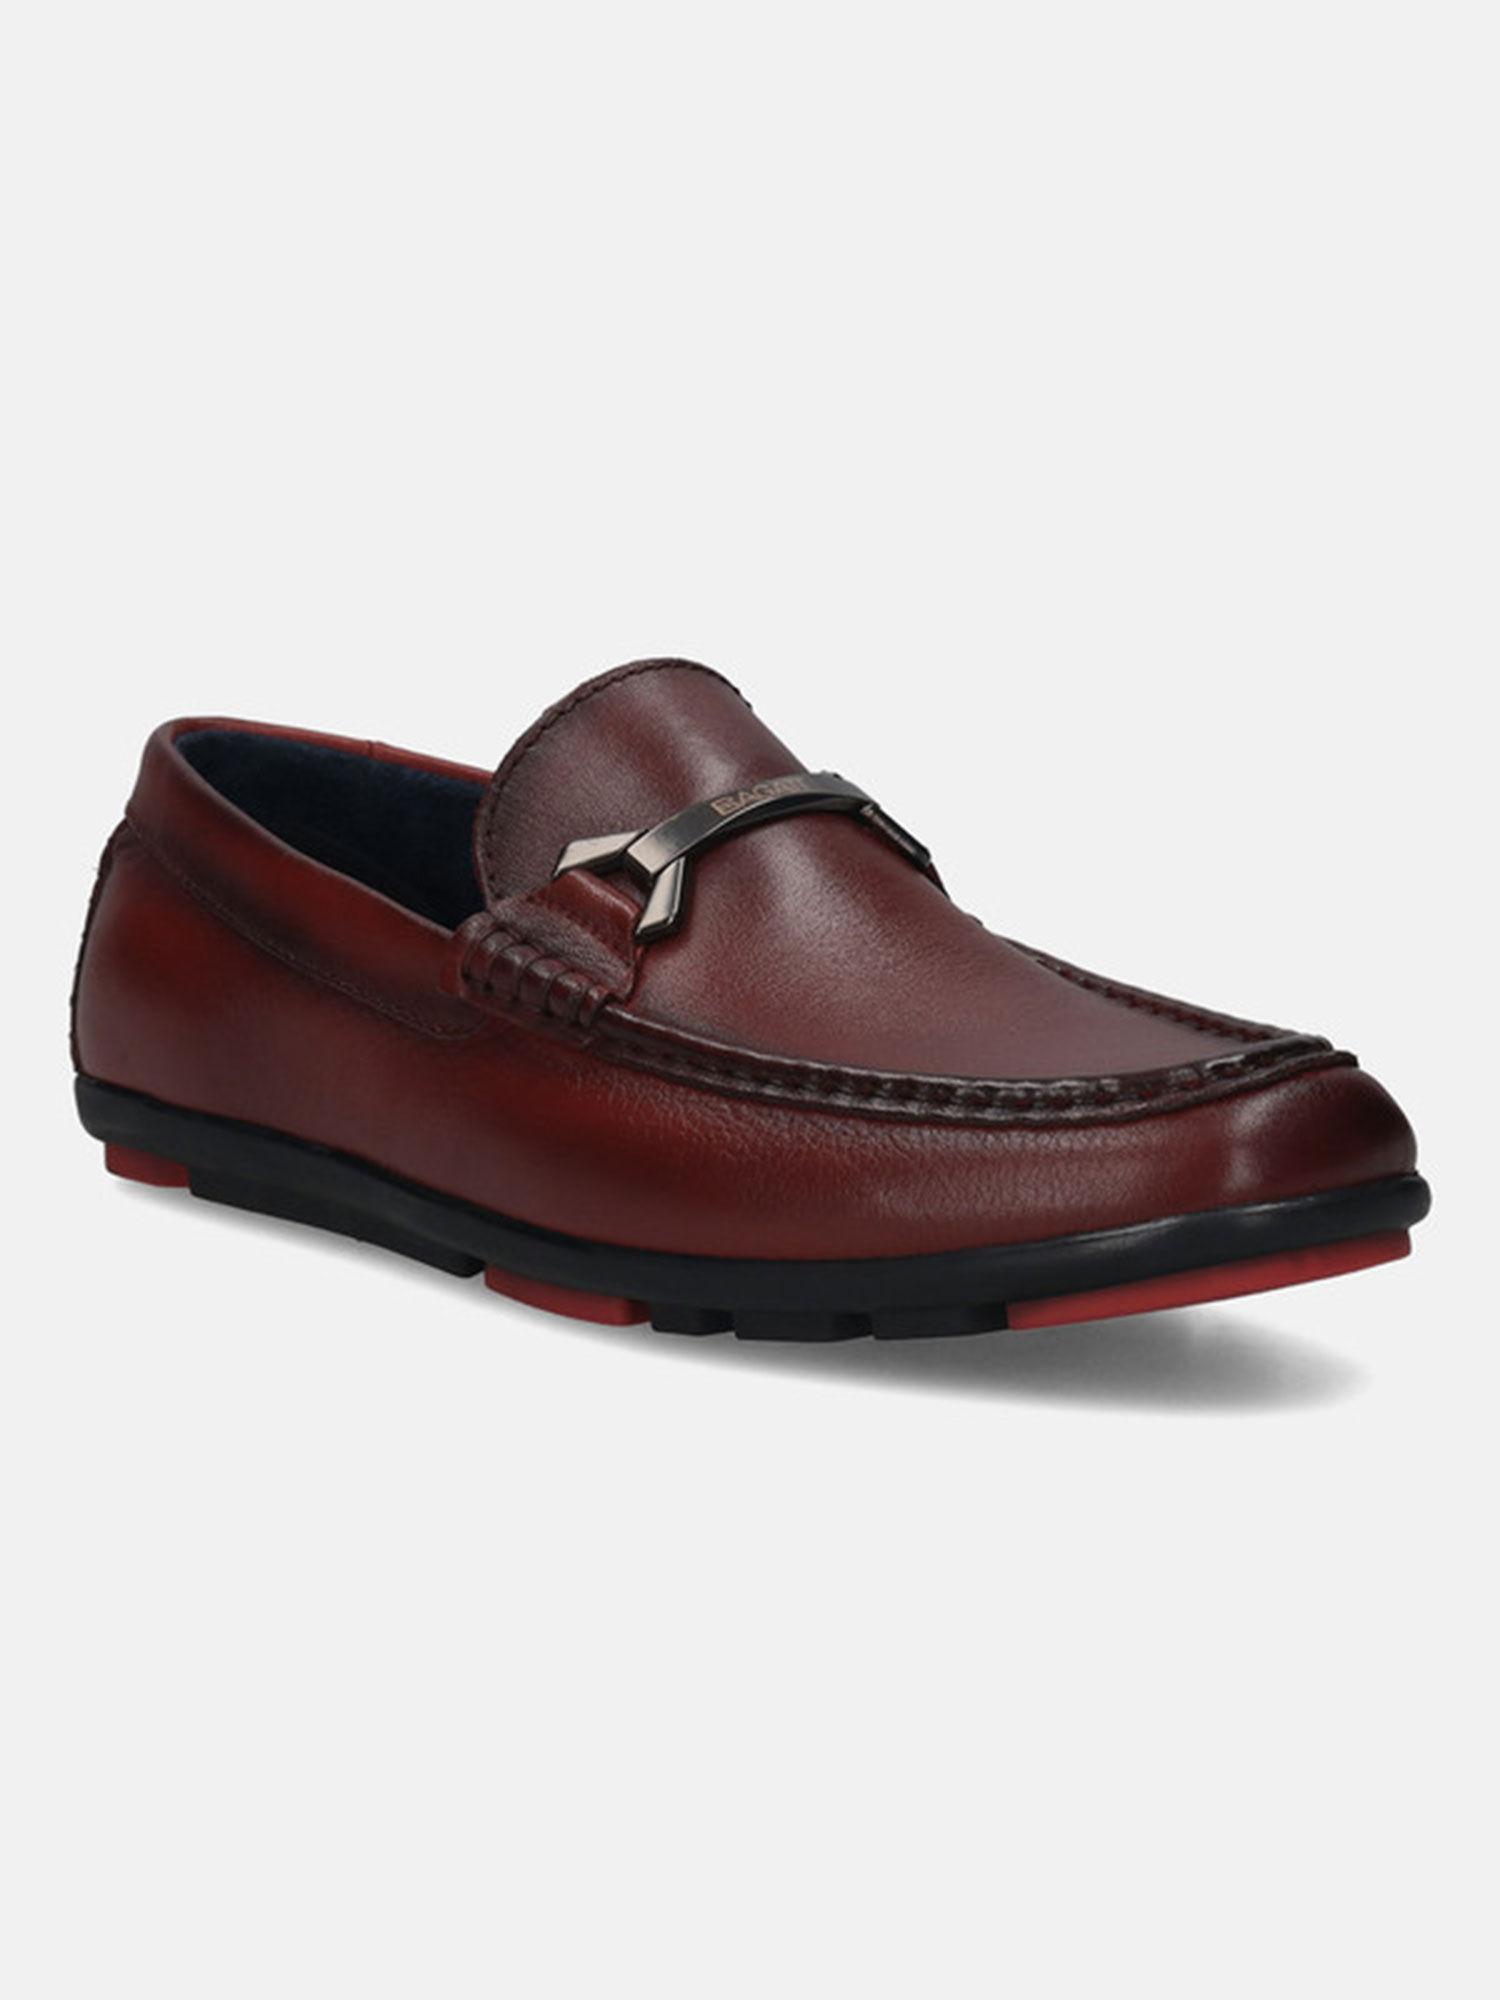 corrado maroon leather mens formal shoes